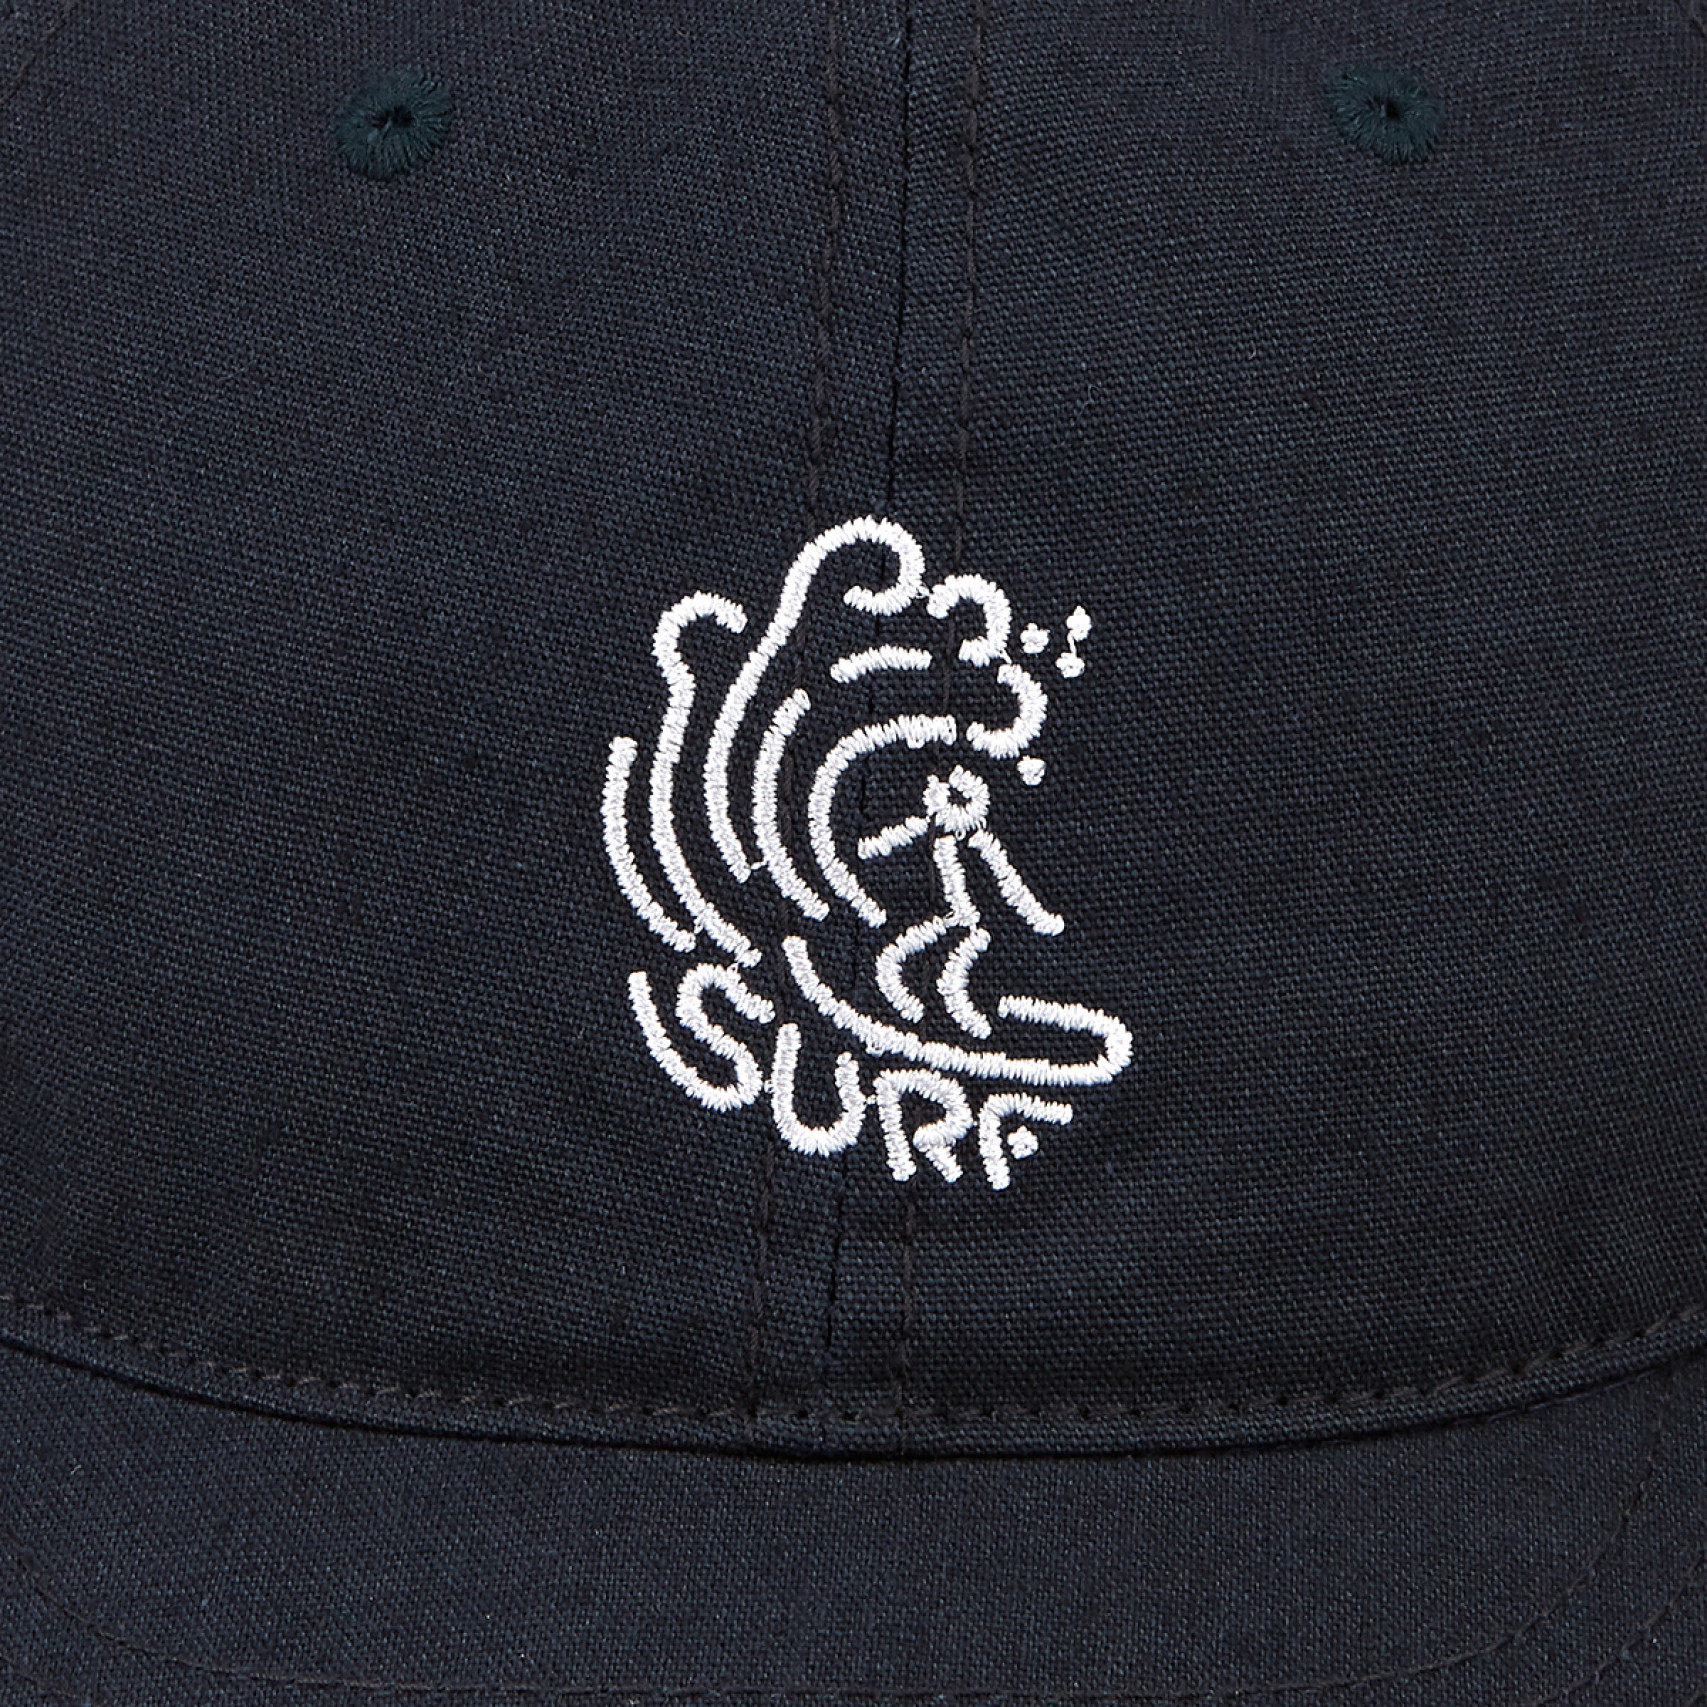 DODLE SURF NEEDLE CAP